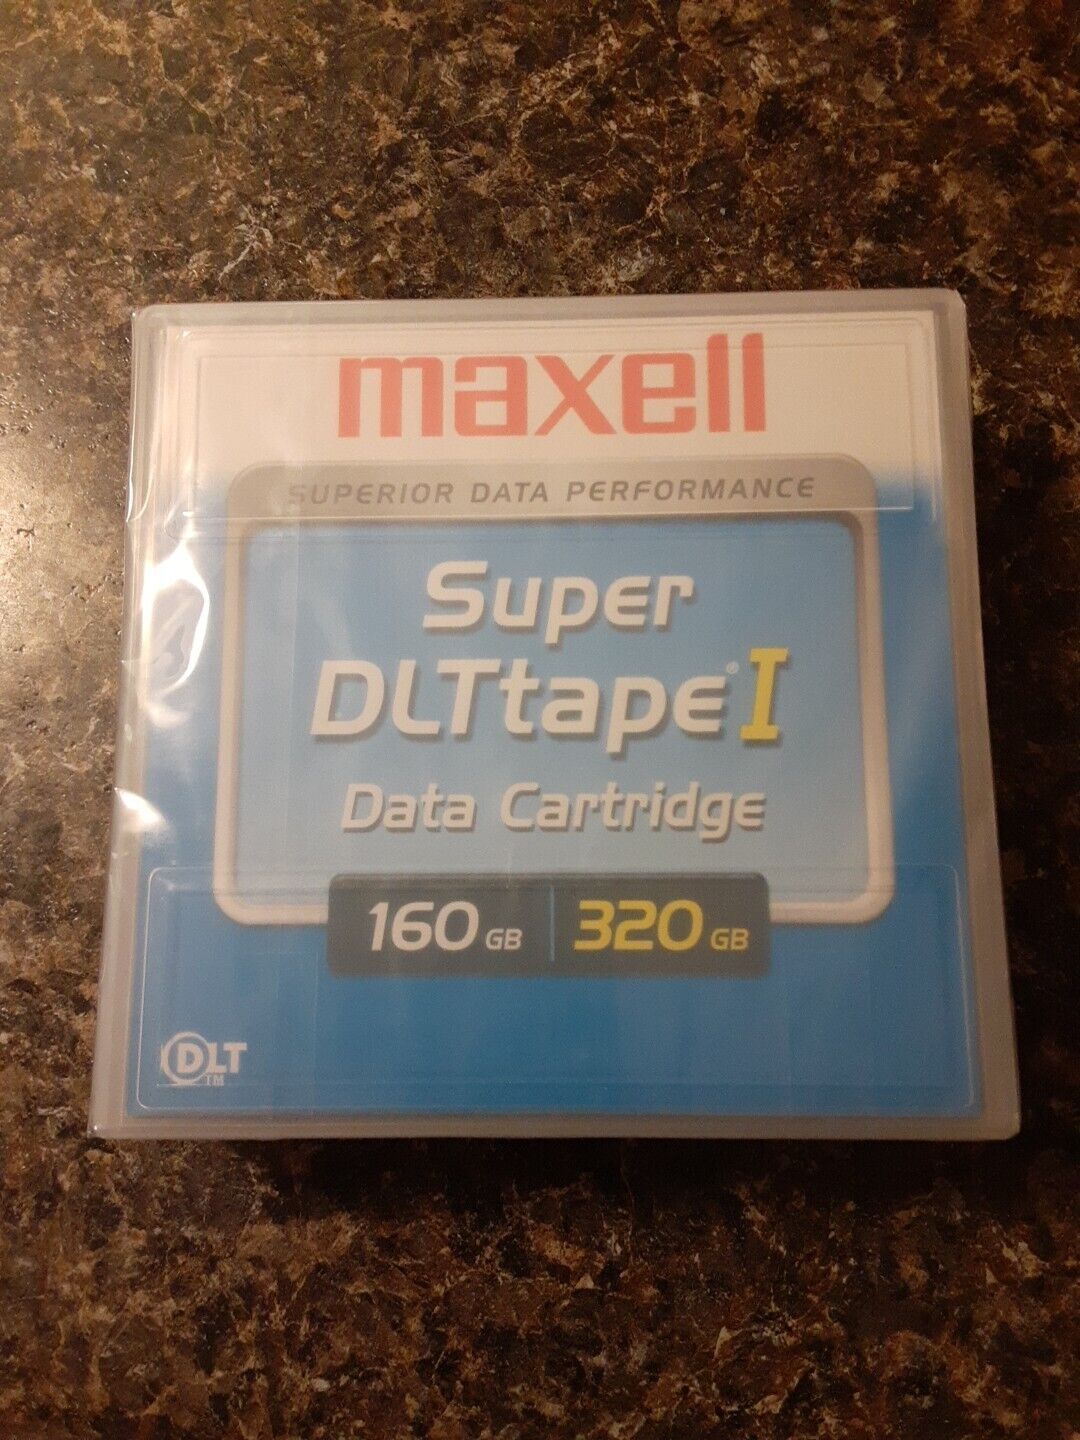 2 New Maxell 22921100 Super DLT Tape I 160 GB / 320 GB 1/2